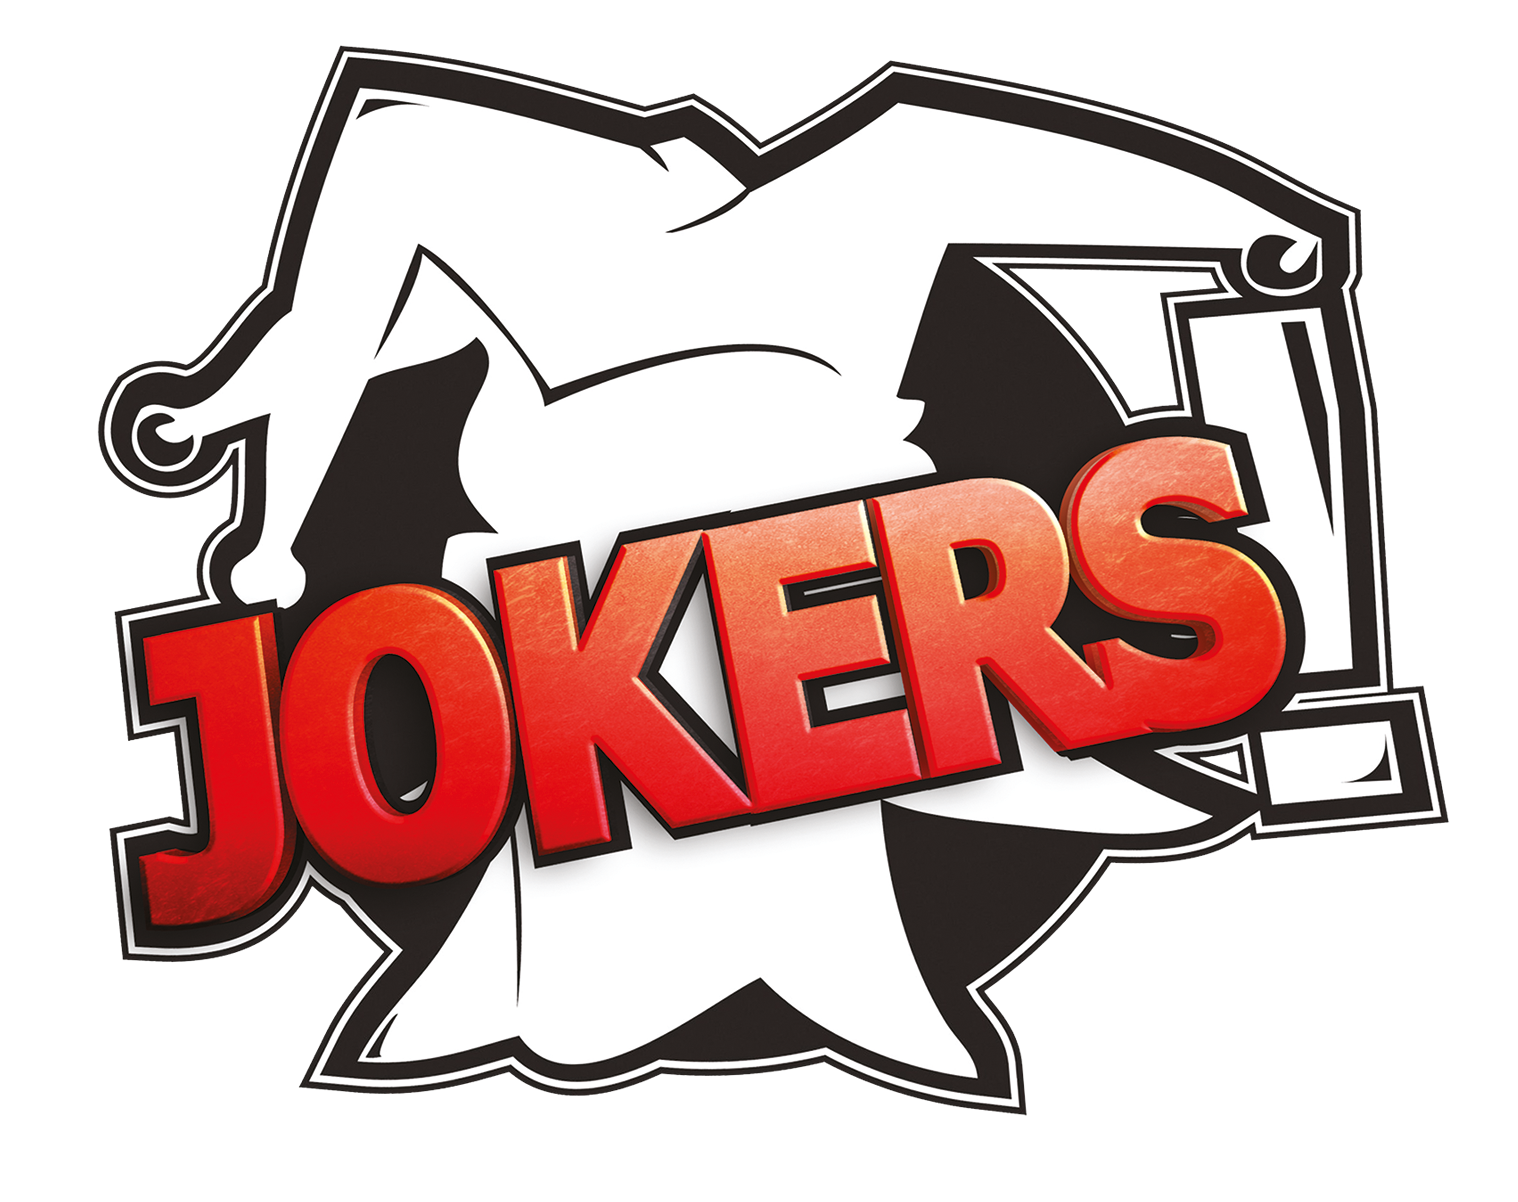 Joker clipart joker logo, Joker joker logo Transparent FREE for ...